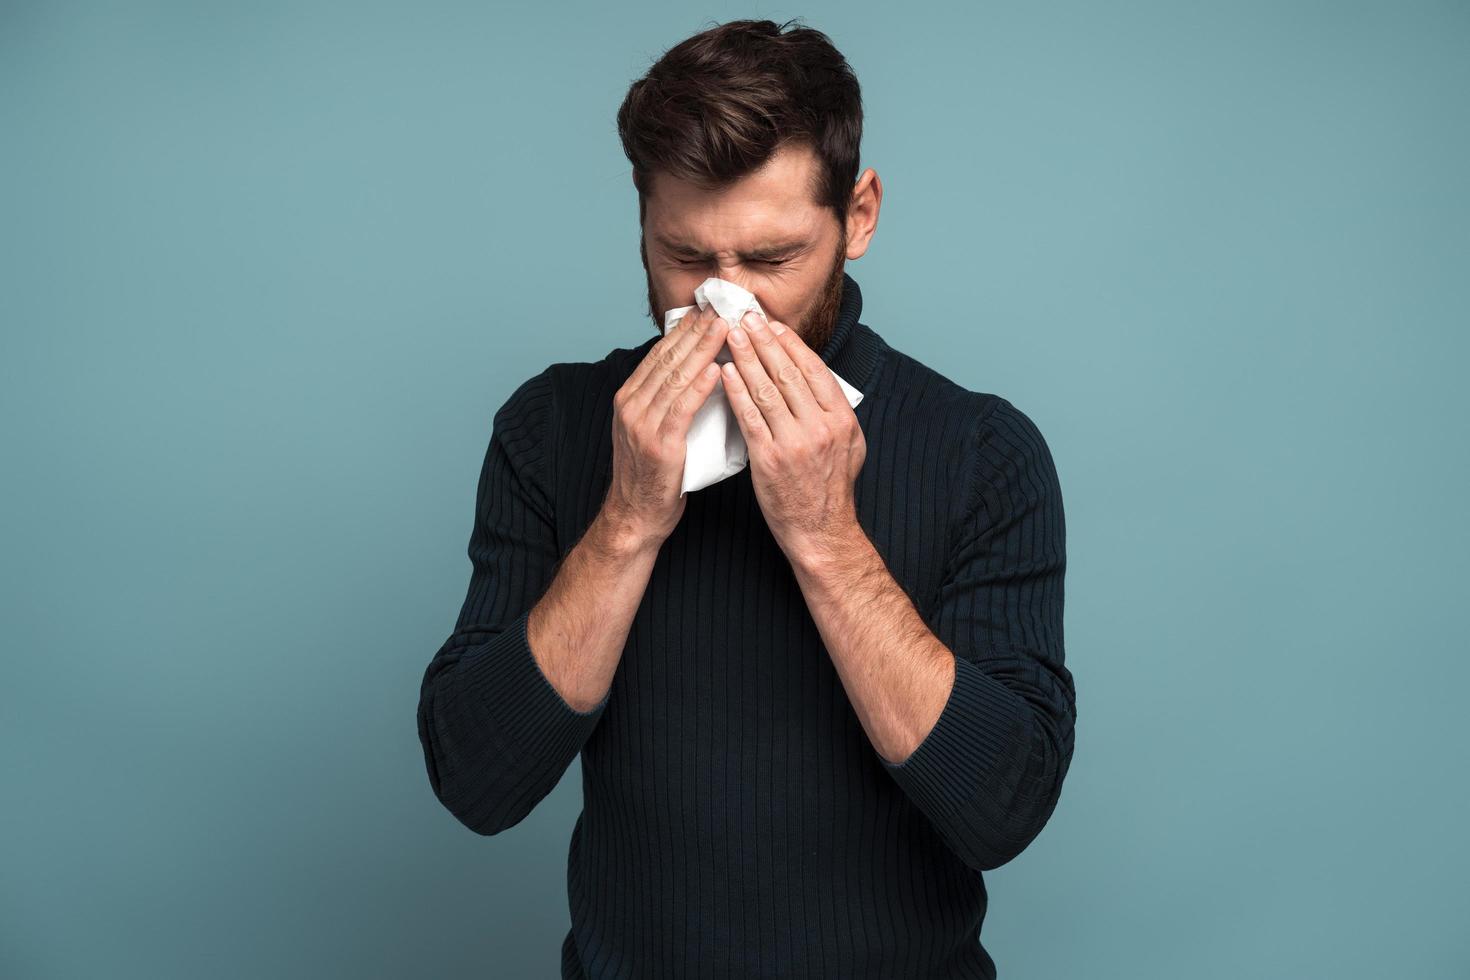 verkoudheid en griep. portret van een zieke, bebaarde jonge man die staat, weefsel op de mond houdt en verdriet en ziekte voelt. indoor studio-opname, geïsoleerd op blauwe achtergrond foto